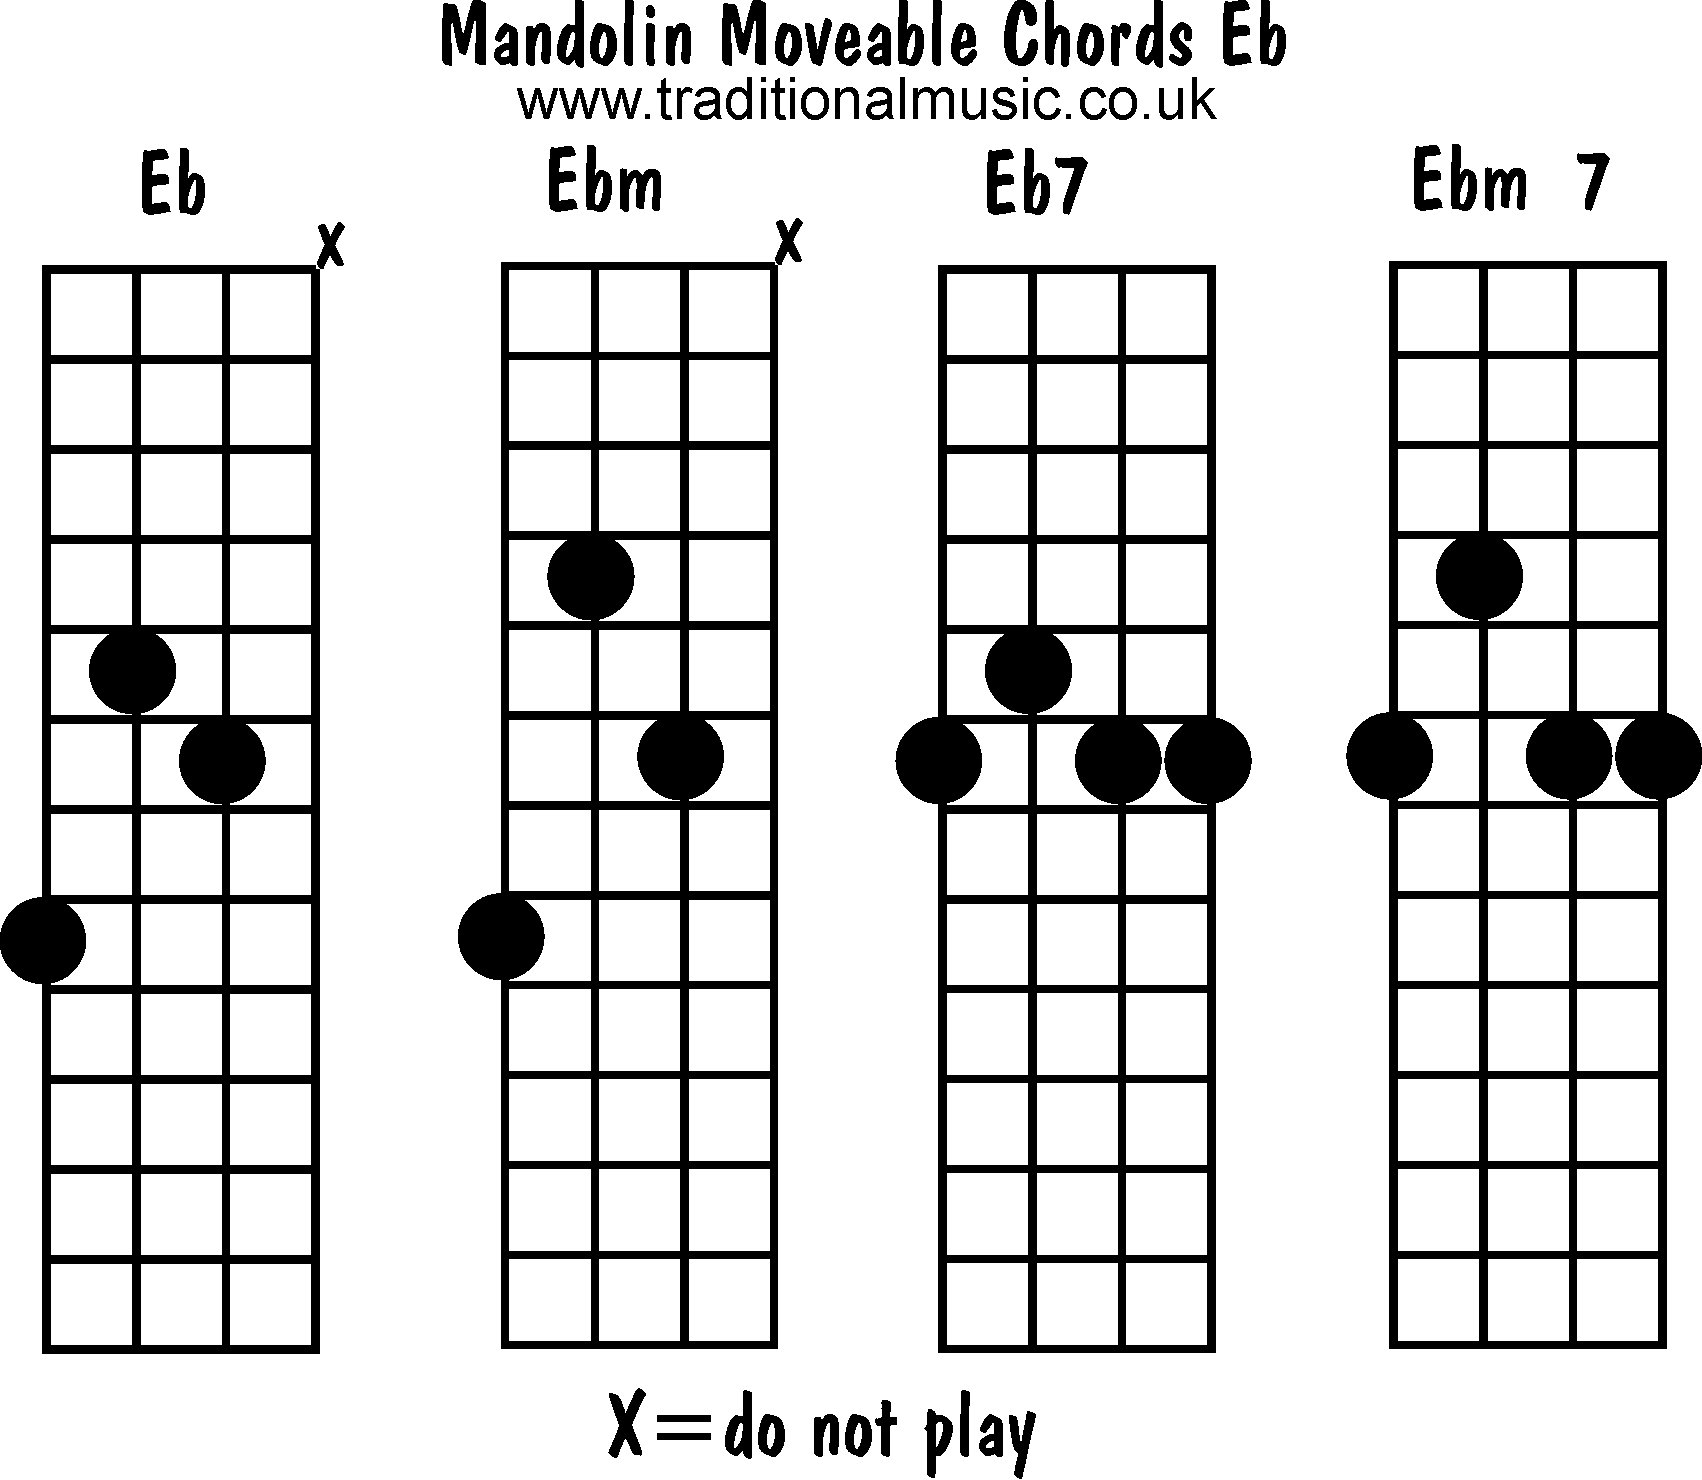 Moveable mandolin chords: Eb, Ebm, Eb7, Ebm7